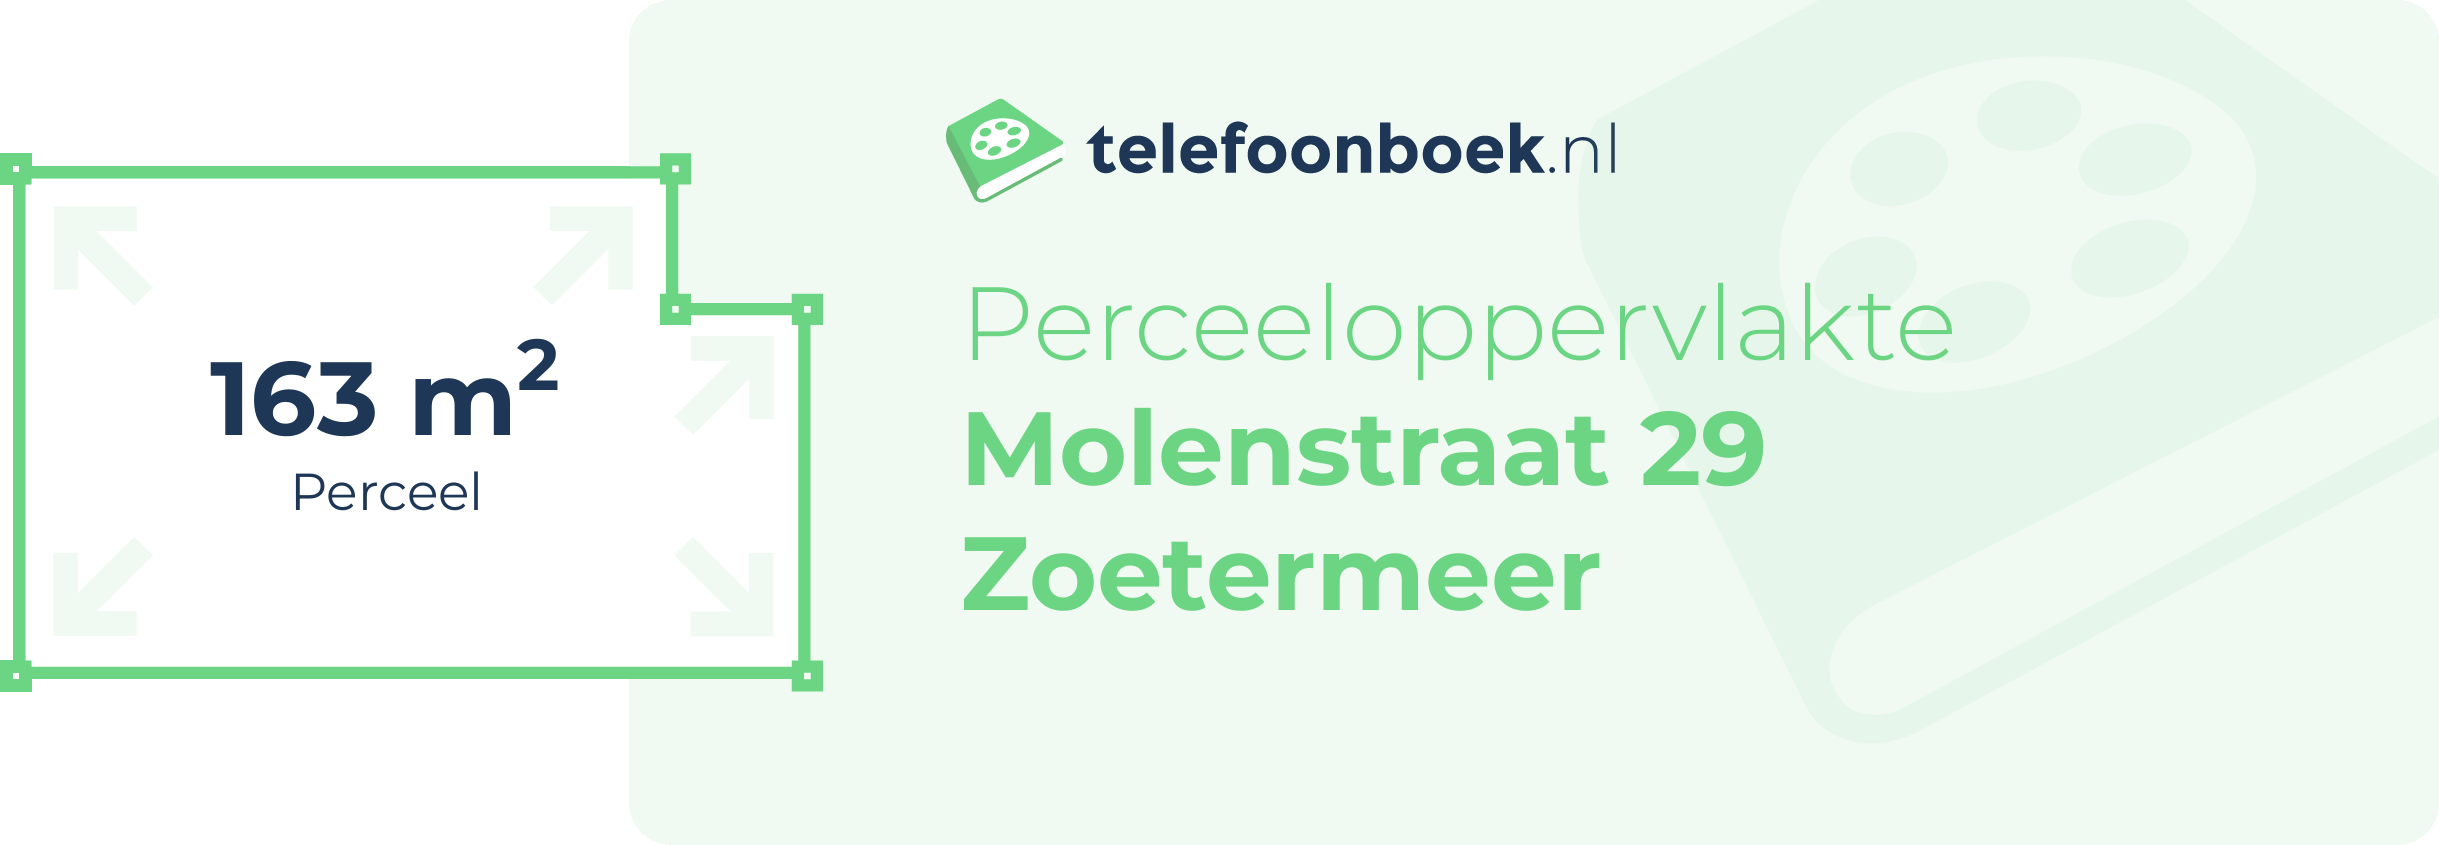 Perceeloppervlakte Molenstraat 29 Zoetermeer